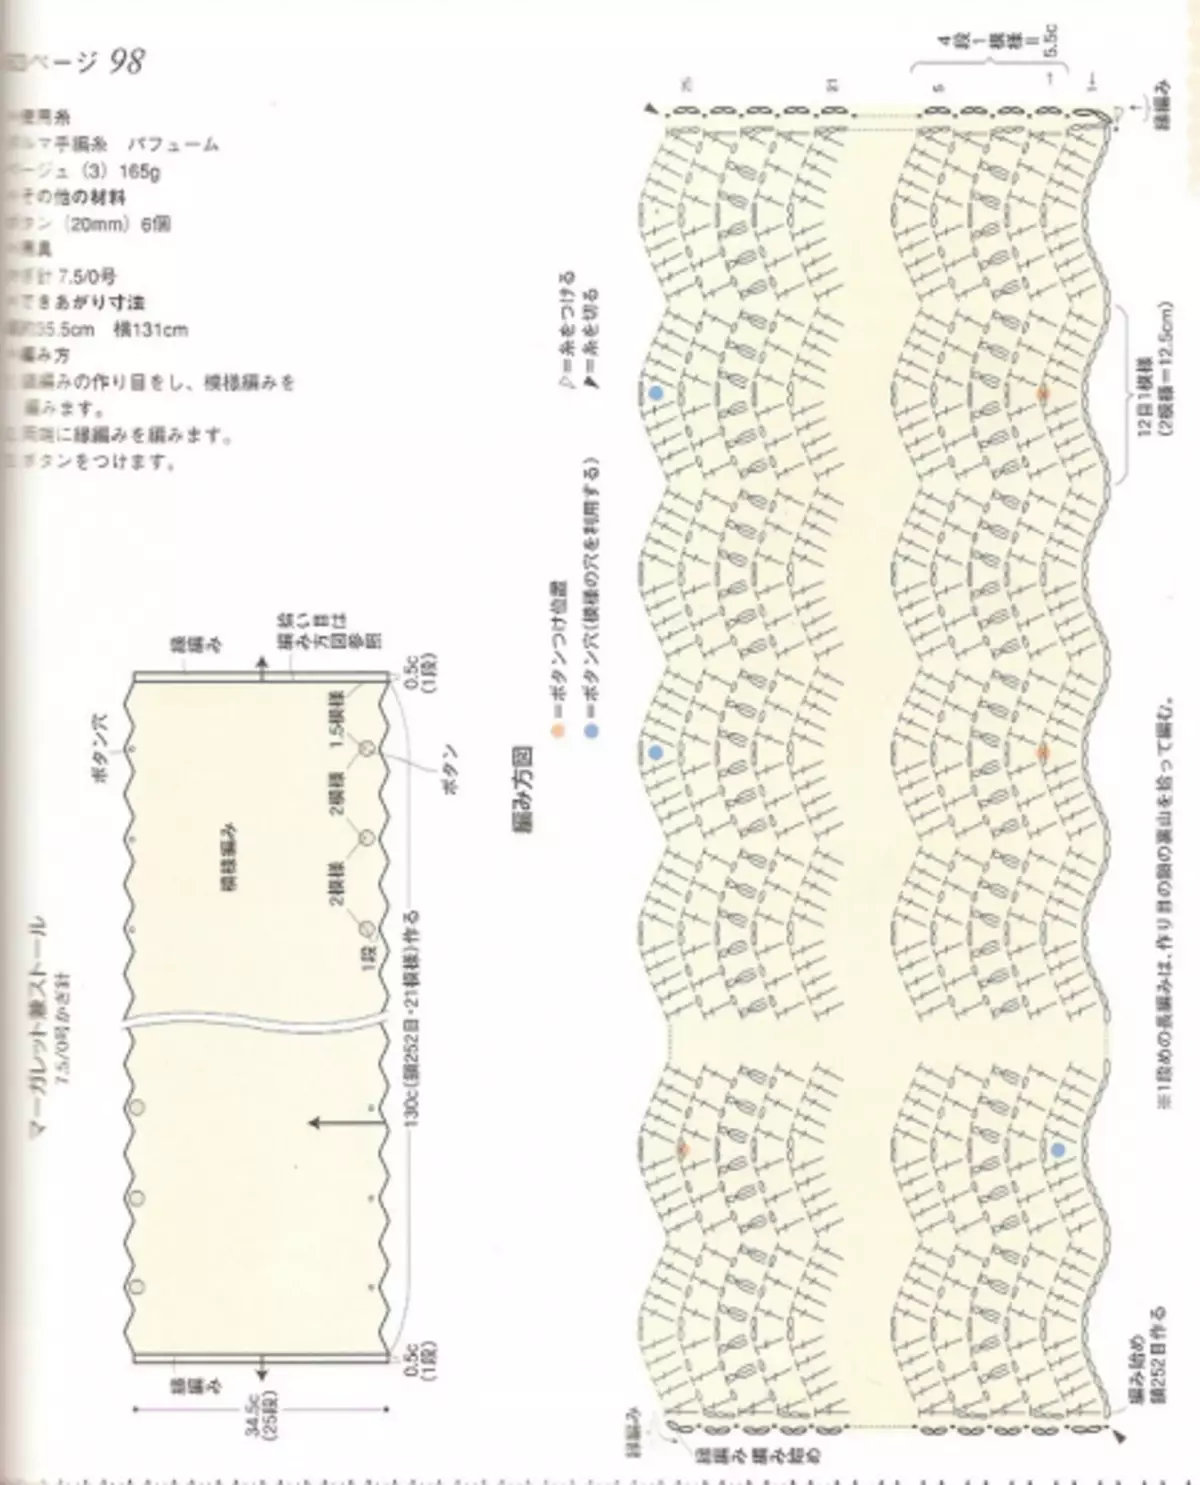 Japoniako aldizkaria Crochet eskemekin